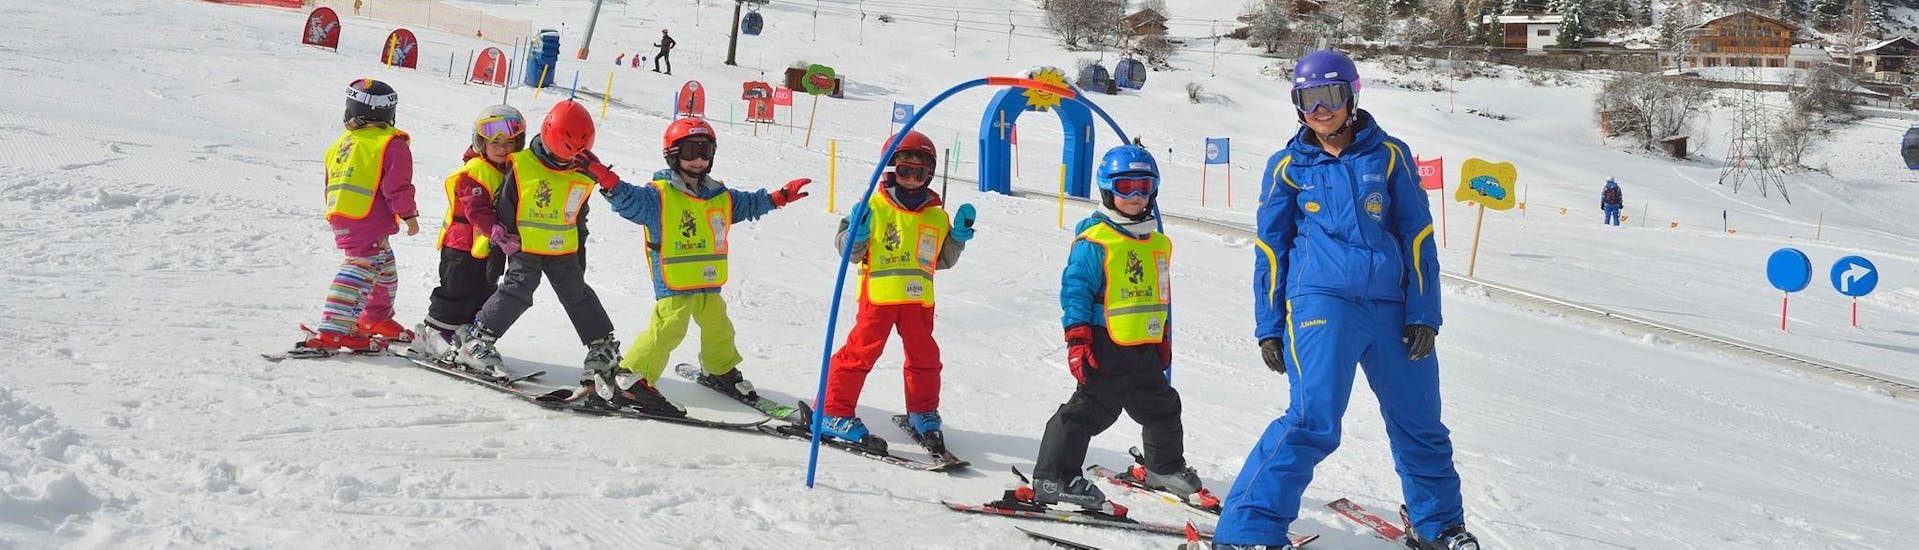 Kinder-Skikurs (5-12 J.) für alle Levels.